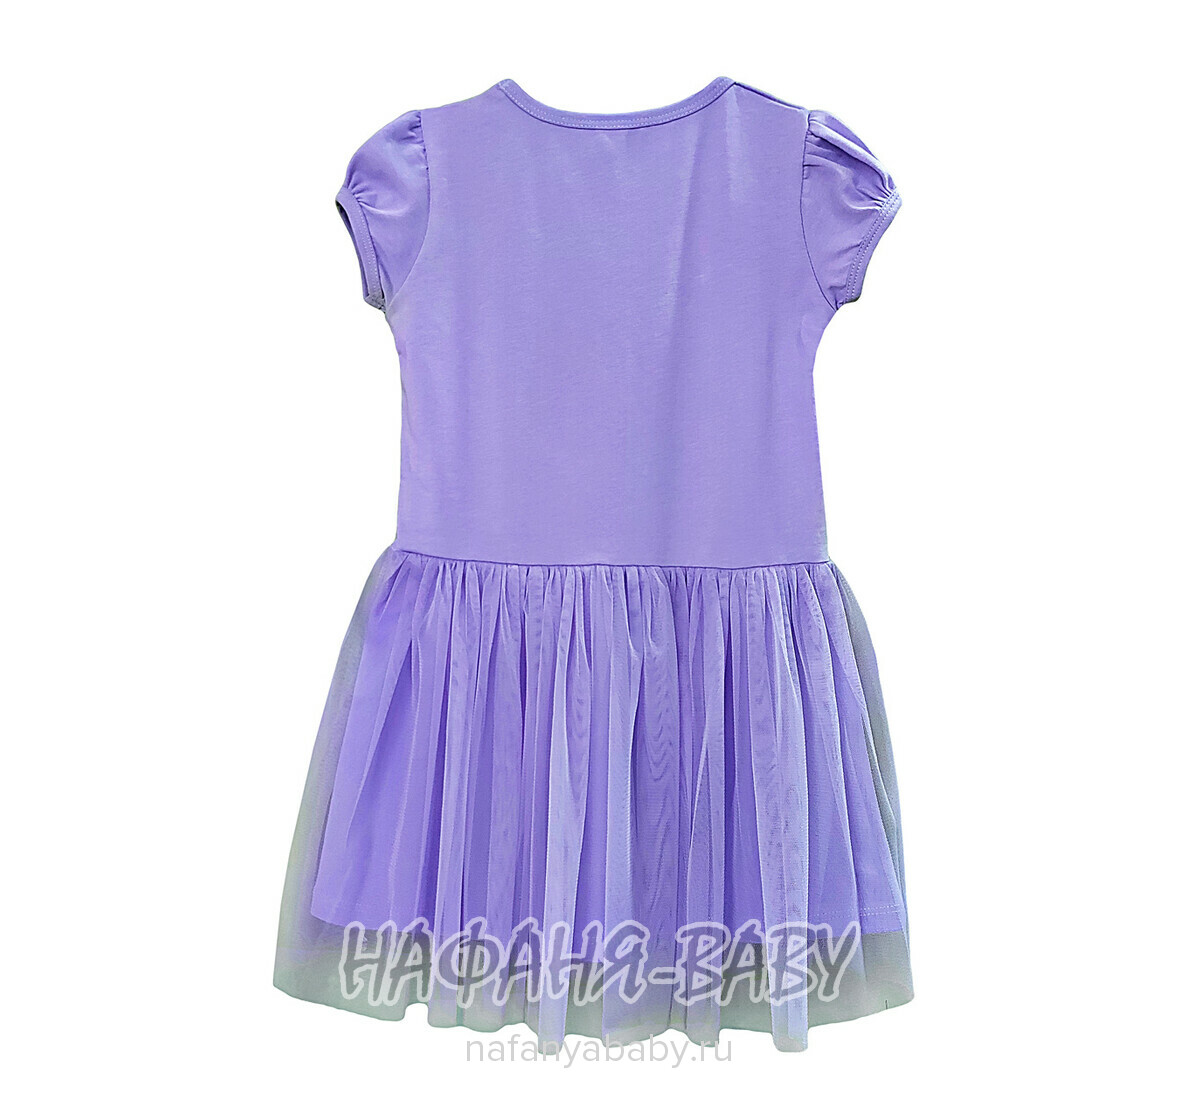 Платье трикотажное POP FASHION GIRLS арт: 6827, 1-4 года, 5-9 лет, цвет сиреневый, оптом Турция